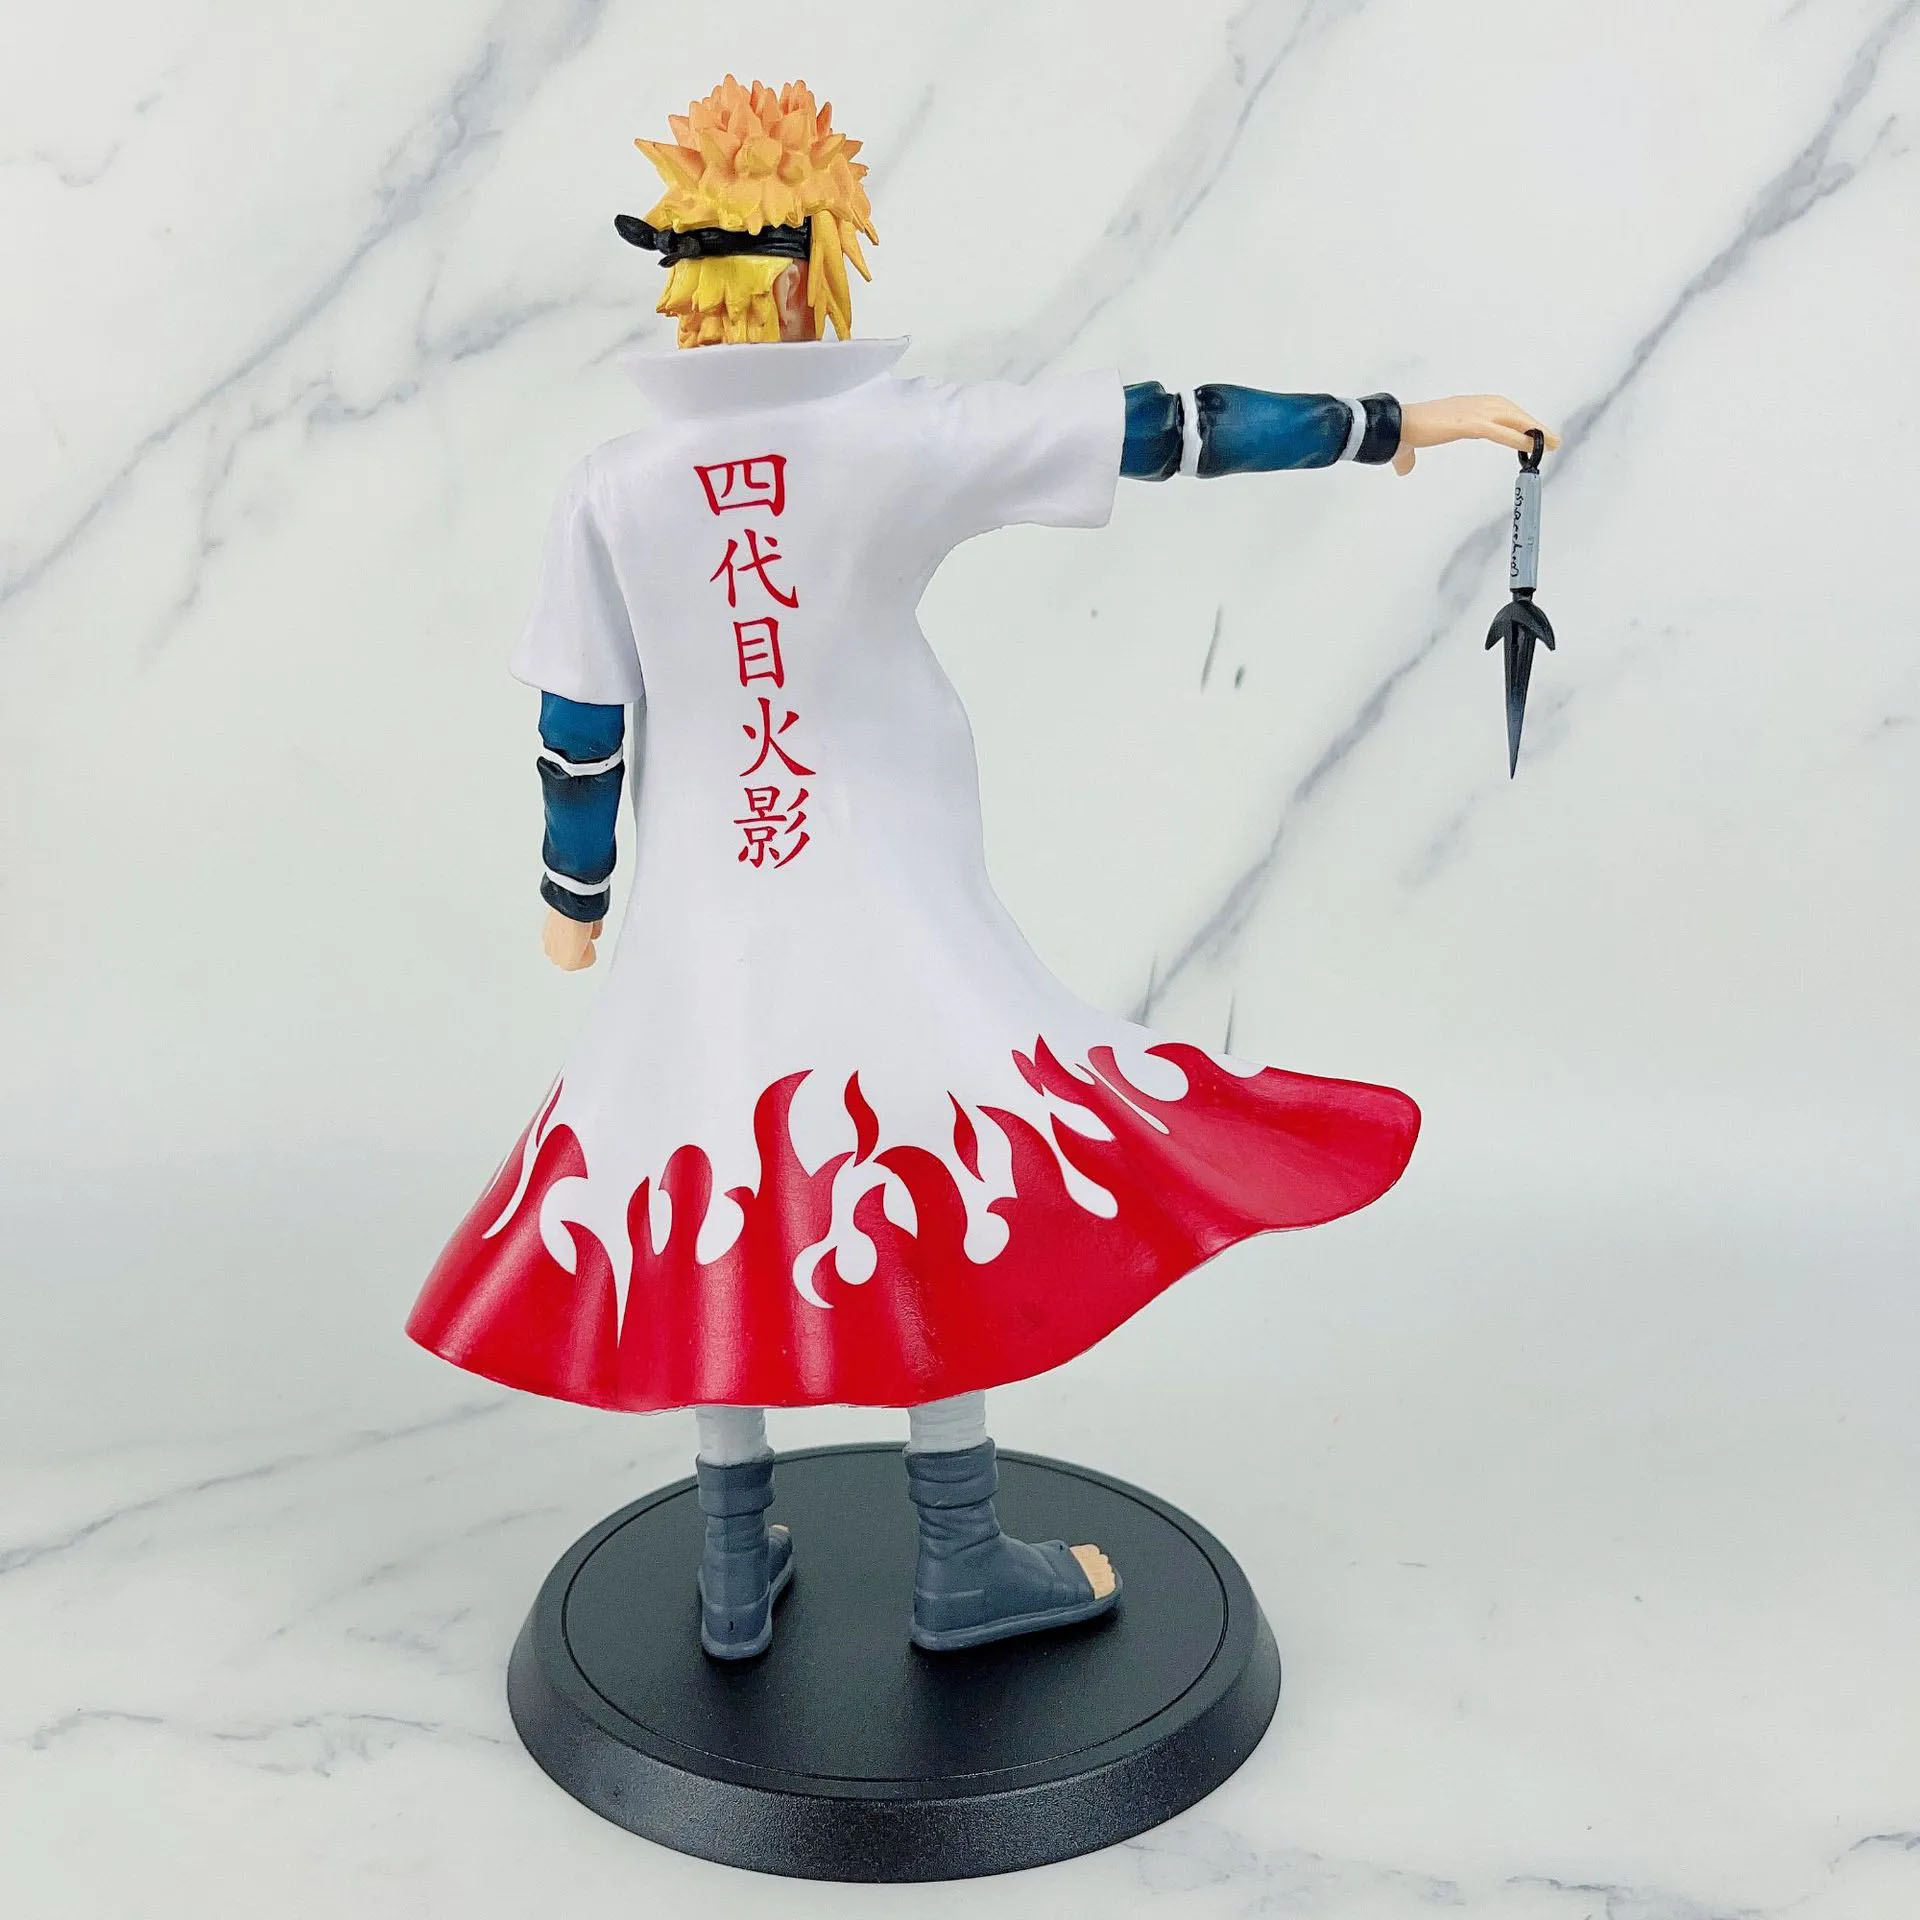 Mô Hình Naruto Minato dáng đứng siêu ngầu cao 25cm - Figure Naruto